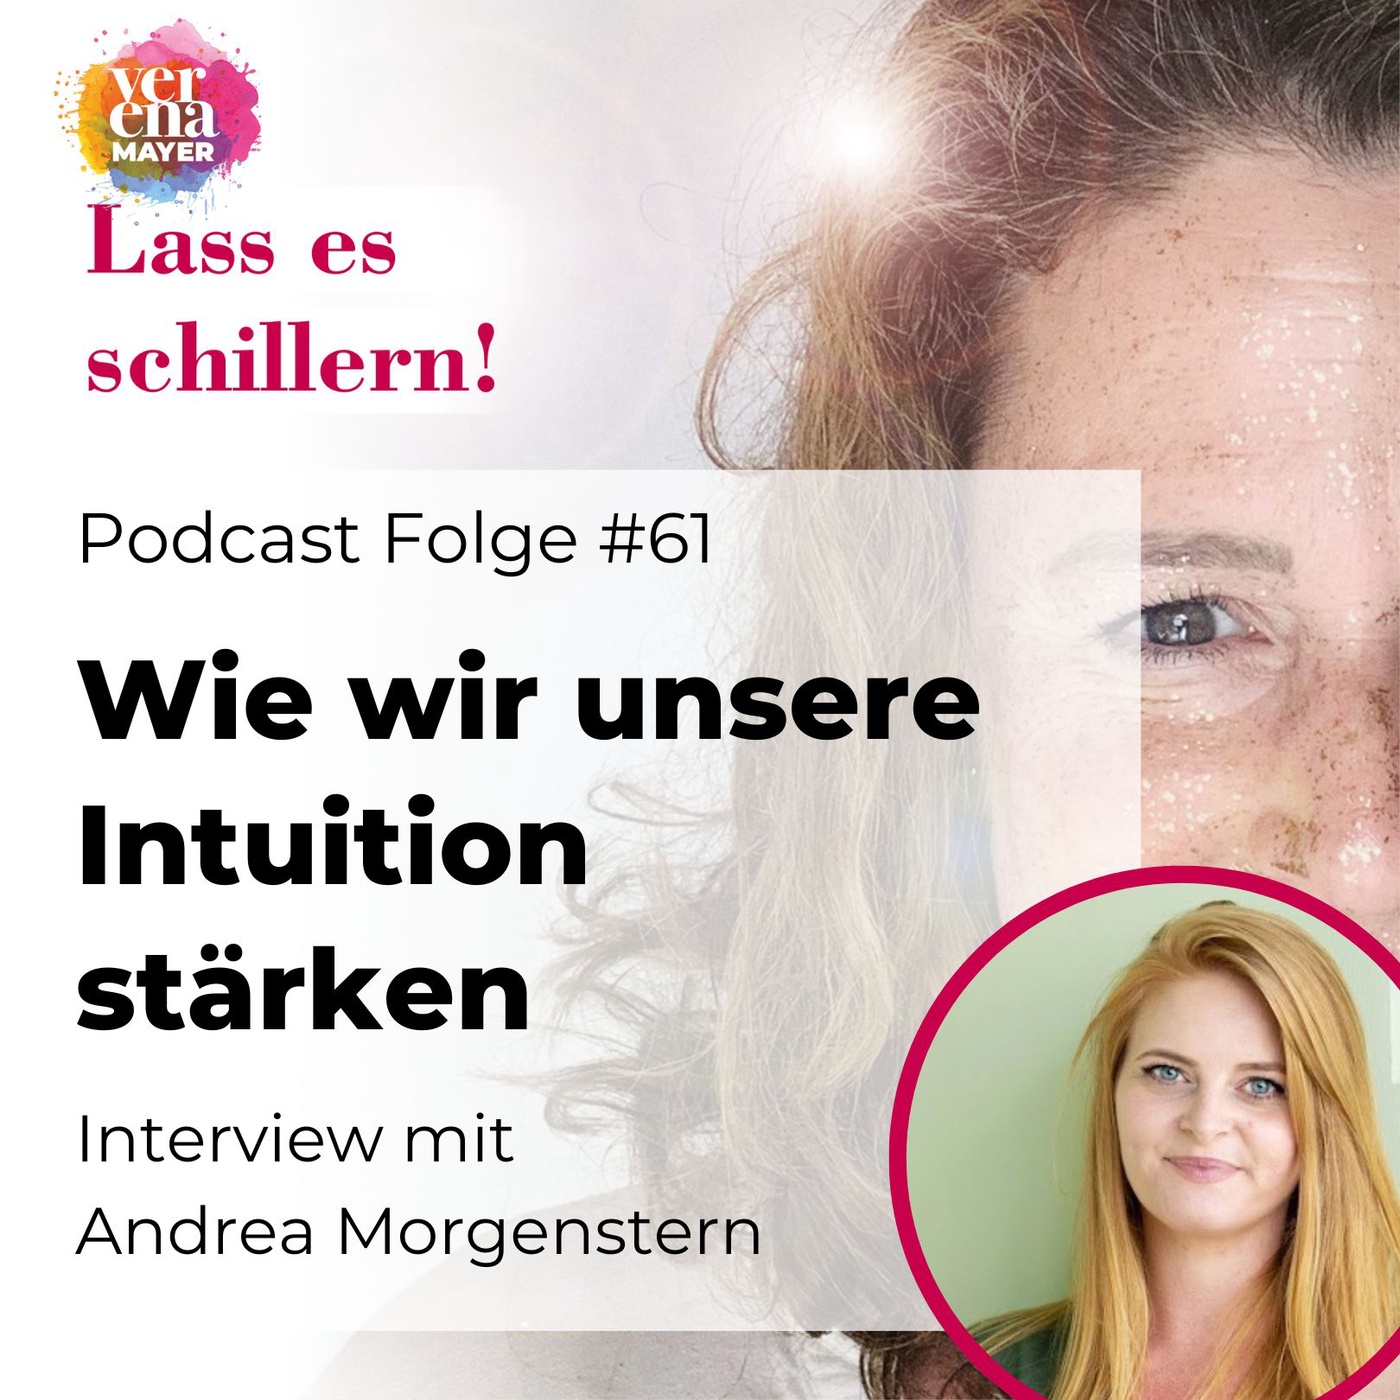 Wie wir unsere Intuition stärken – Interview mit Andrea Morgenstern